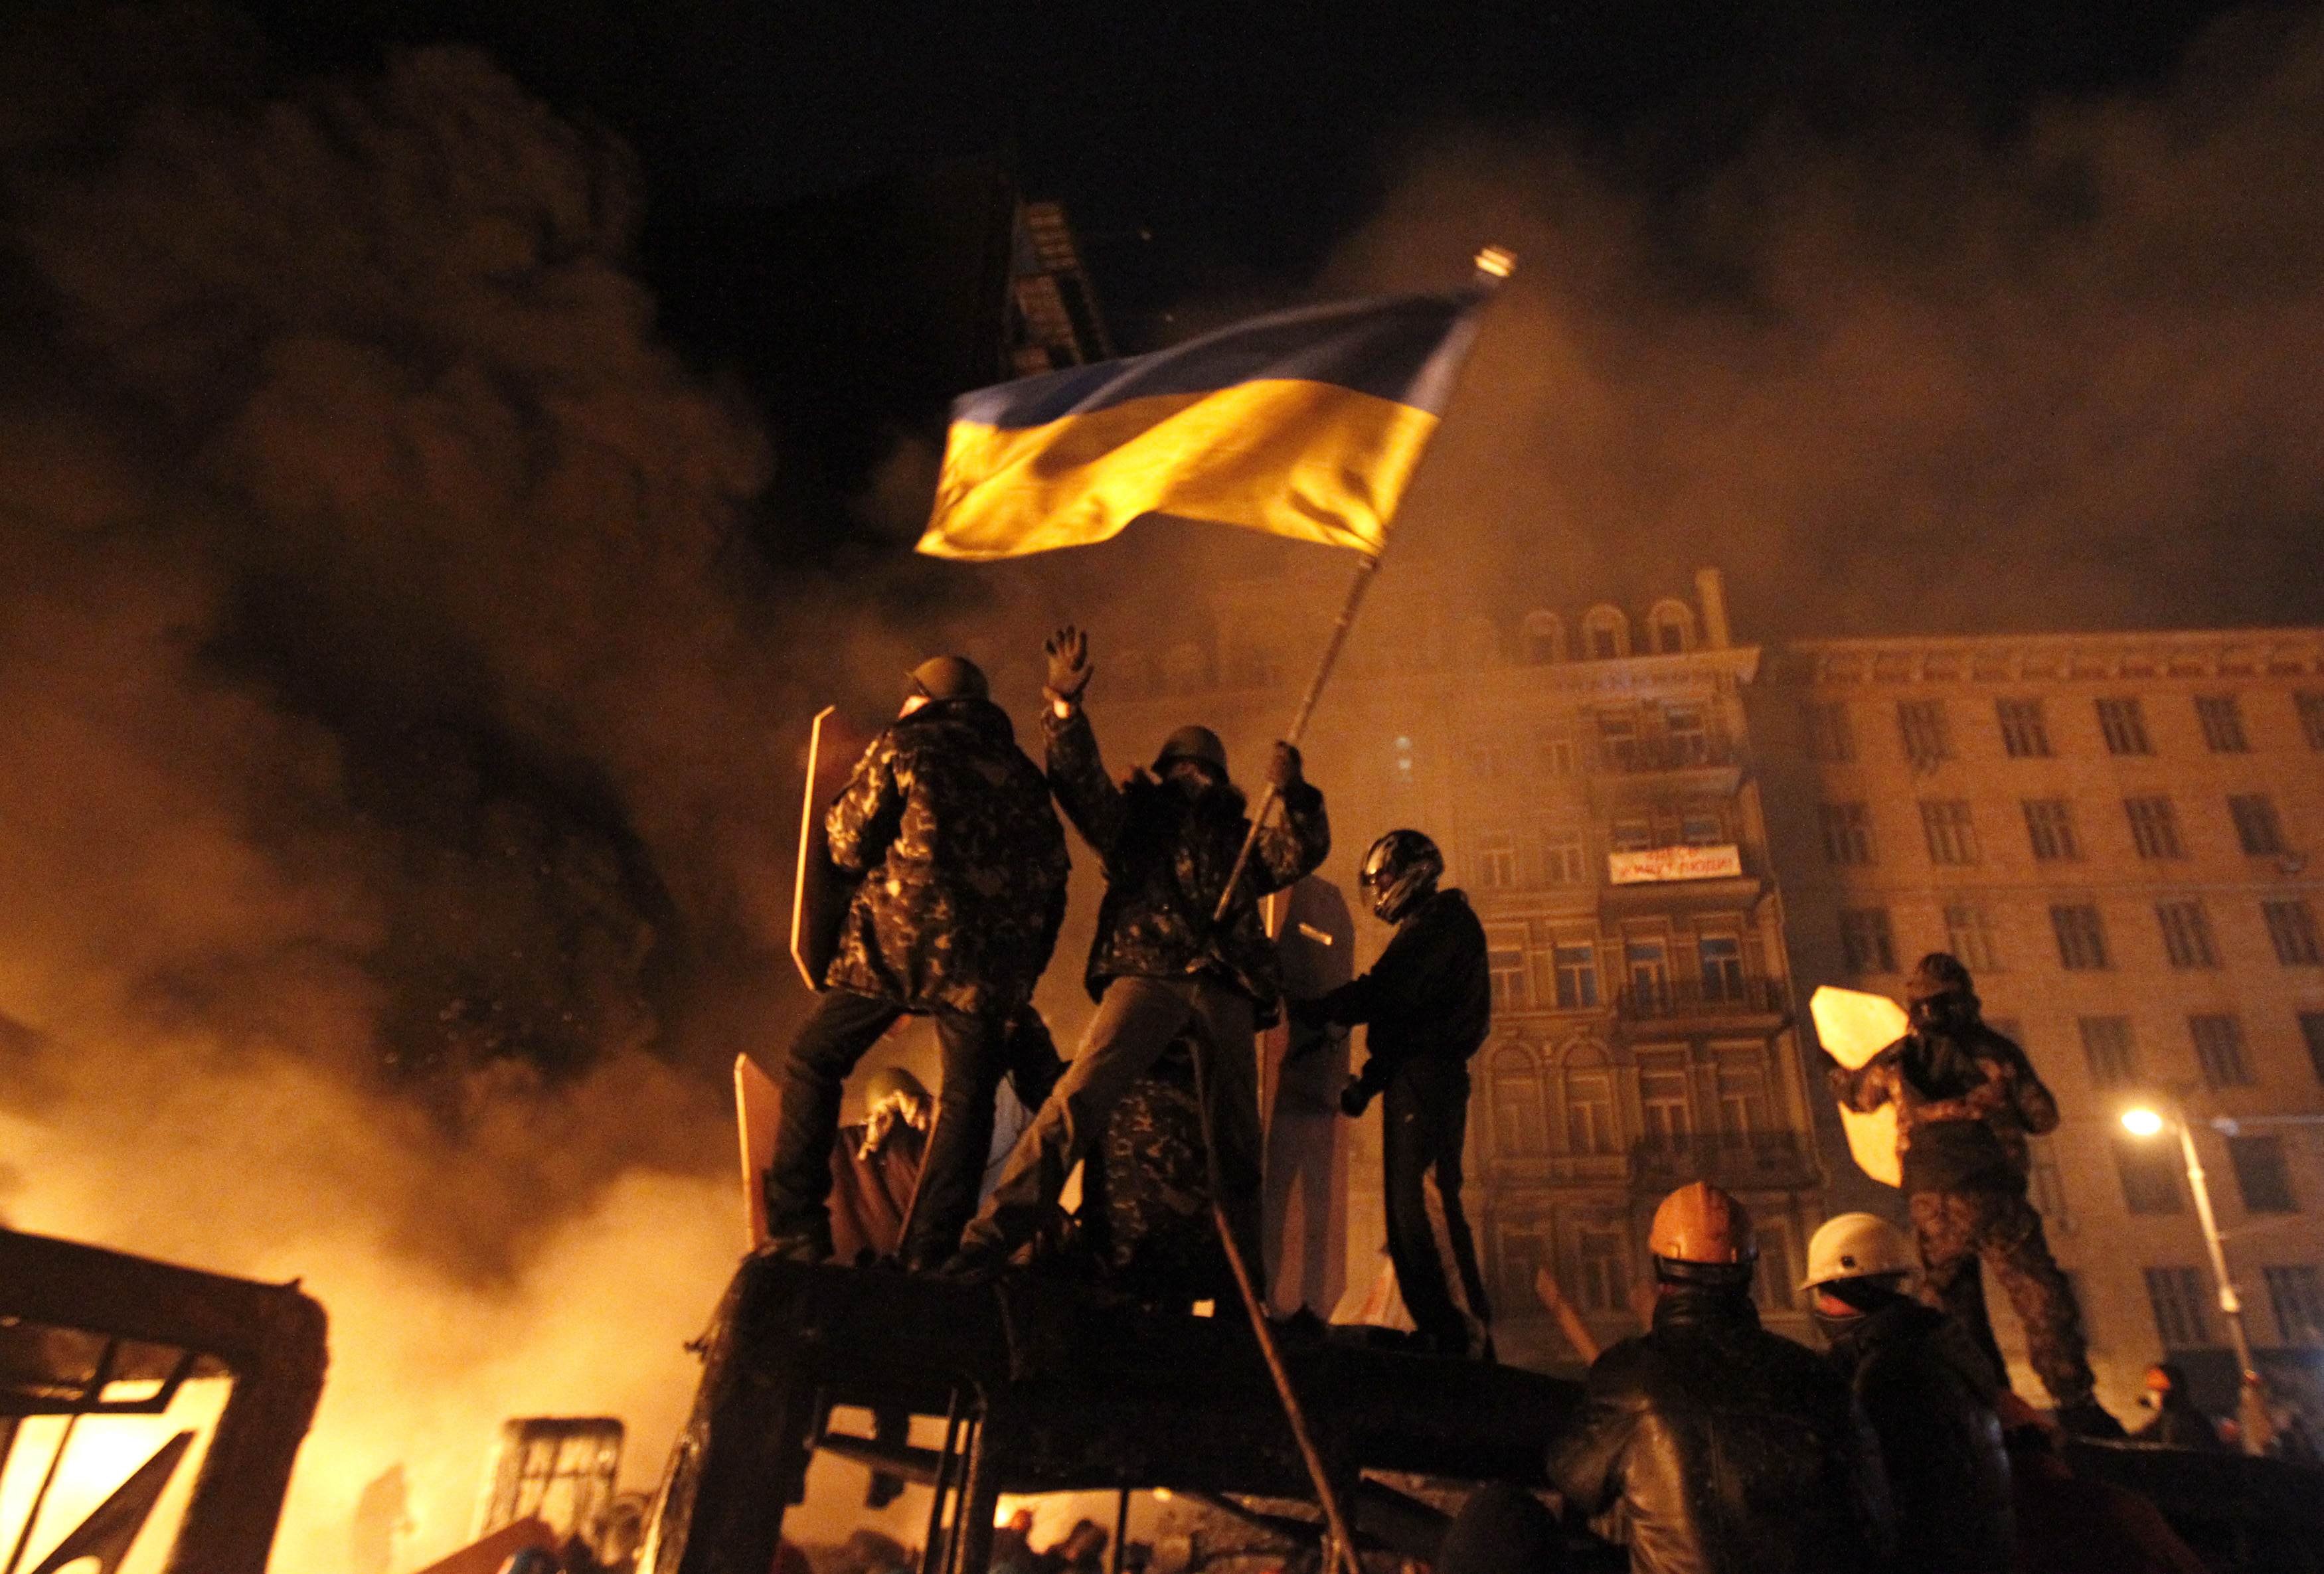 Пономарь: Донбасс, Крым, держитесь! В следующем году мы все будем под нашим флагом!